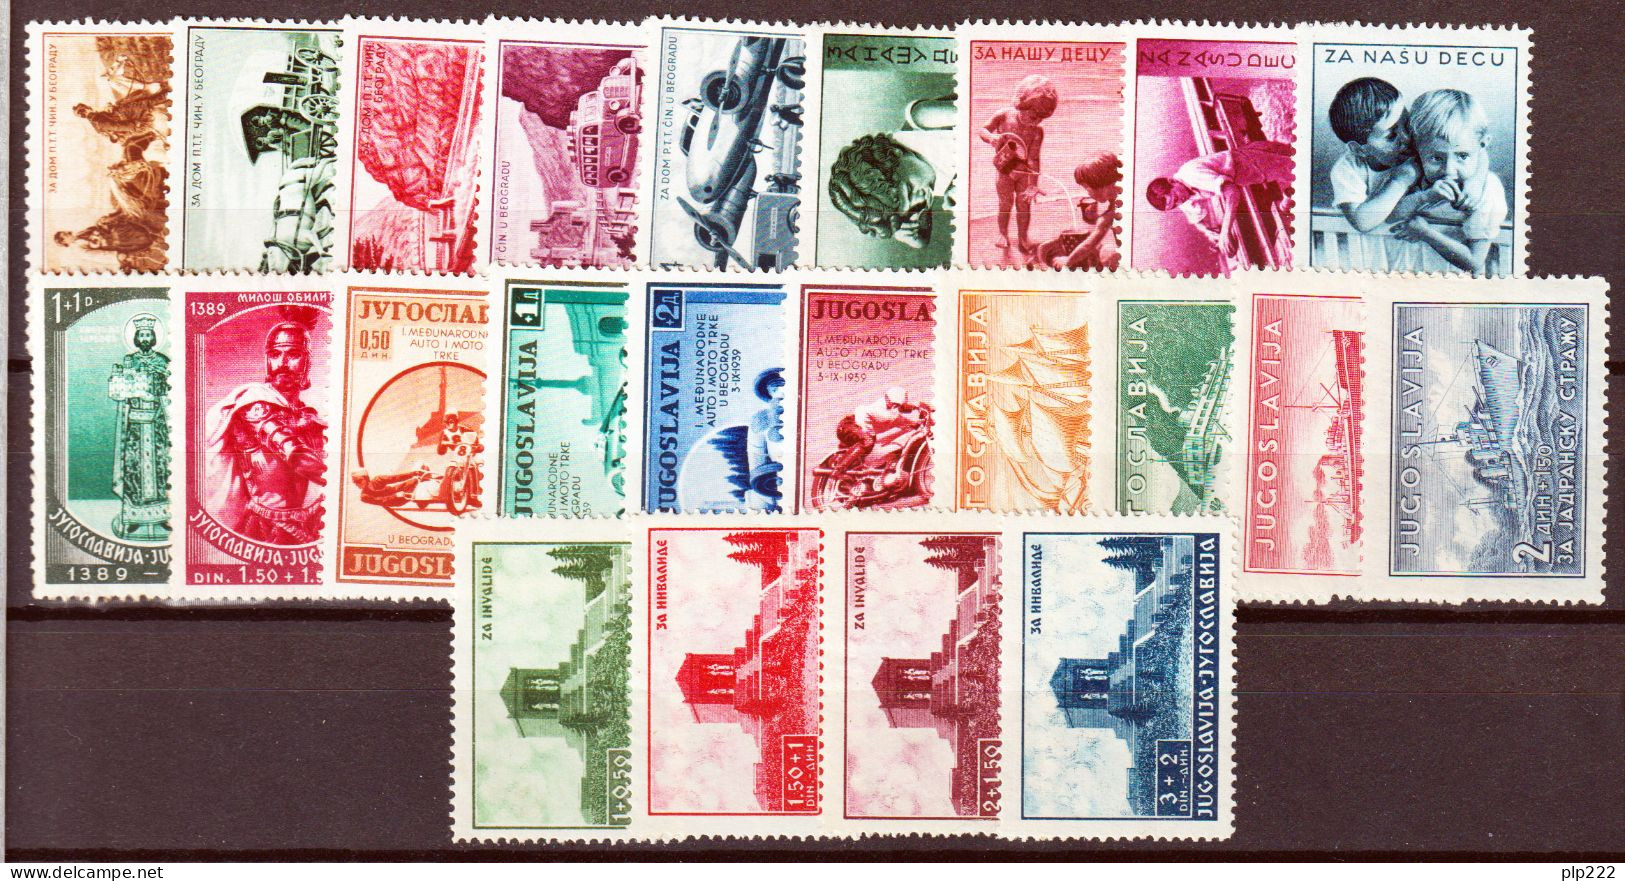 Jugoslavia 1939 Annata Completa Commemorativi / Complete Year Set Commemoratives **/MNH VF/F - Full Years